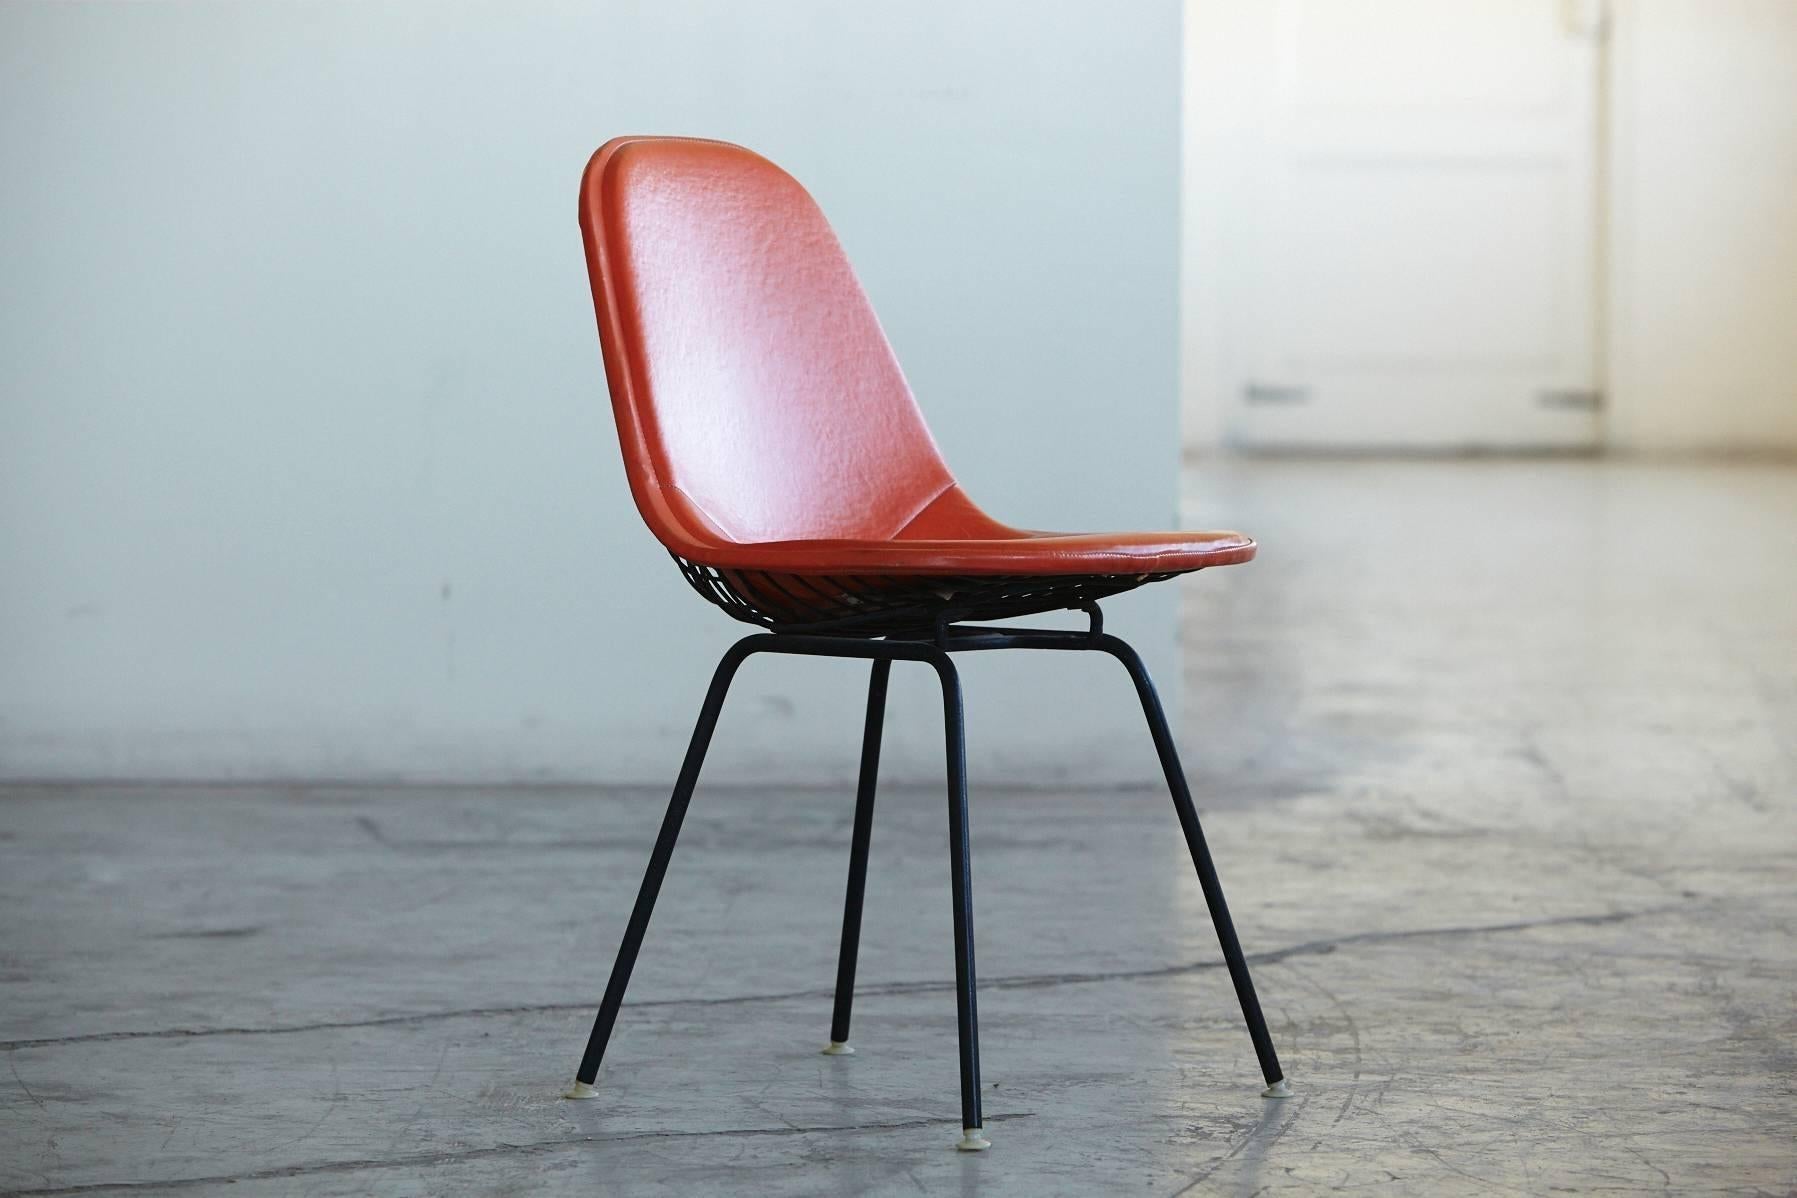 Charles und Ray Eames Beistellstuhl DKX-1 aus orangefarbenem Leder für Herman Miller, ca. 1960er Jahre.
Der Stuhl ist in sehr gutem Vintage-Zustand, keine Beschädigungen am Leder, sehr solider Stuhl.